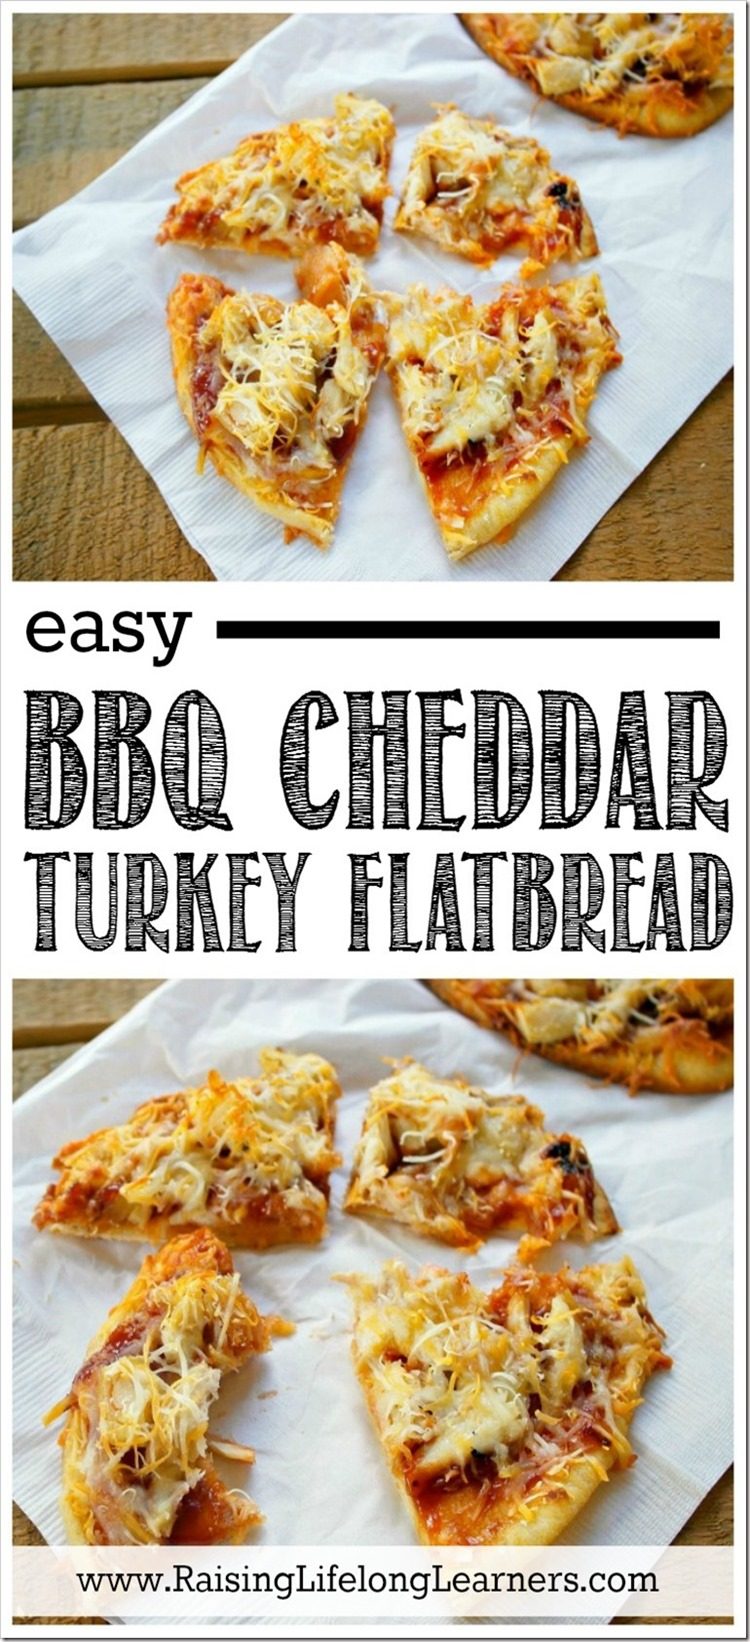 BBQ Cheddar Turkey Flatbread